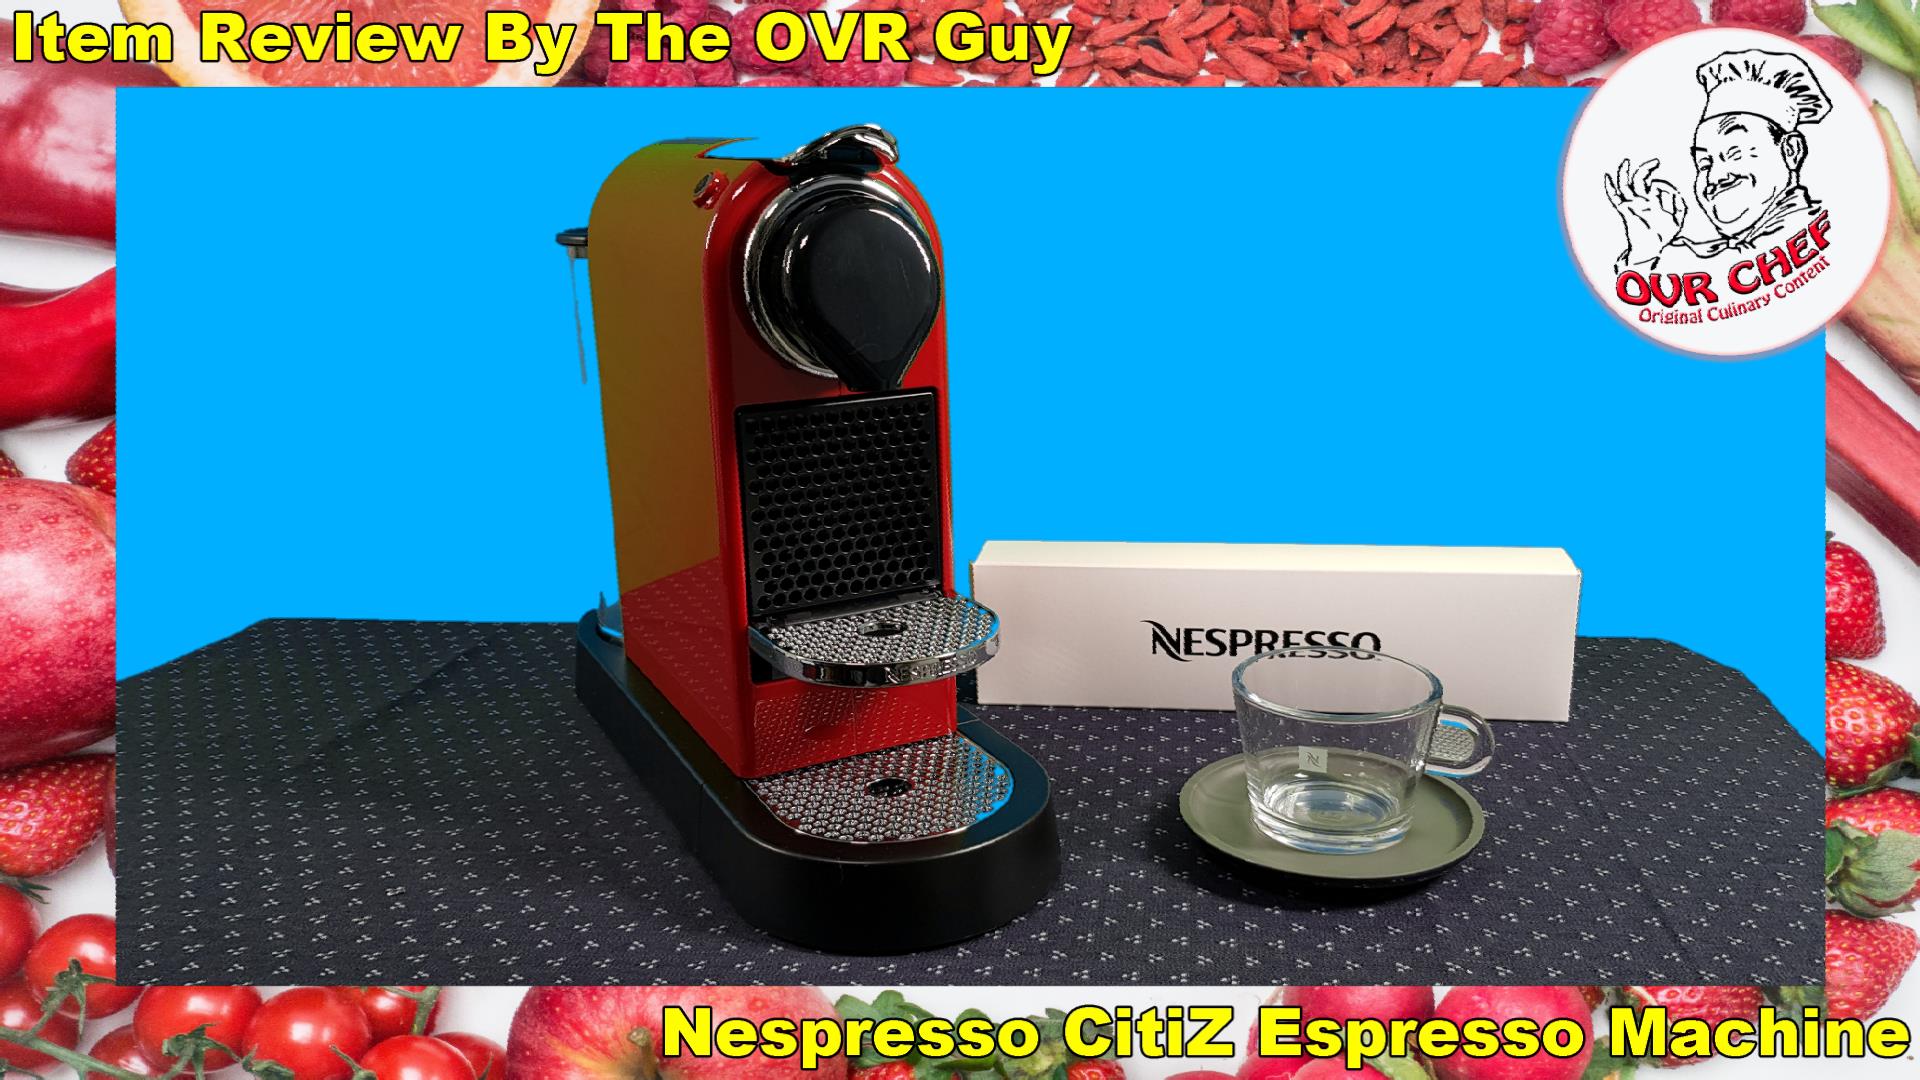 Nespresso CitiZ Espresso Machine Review